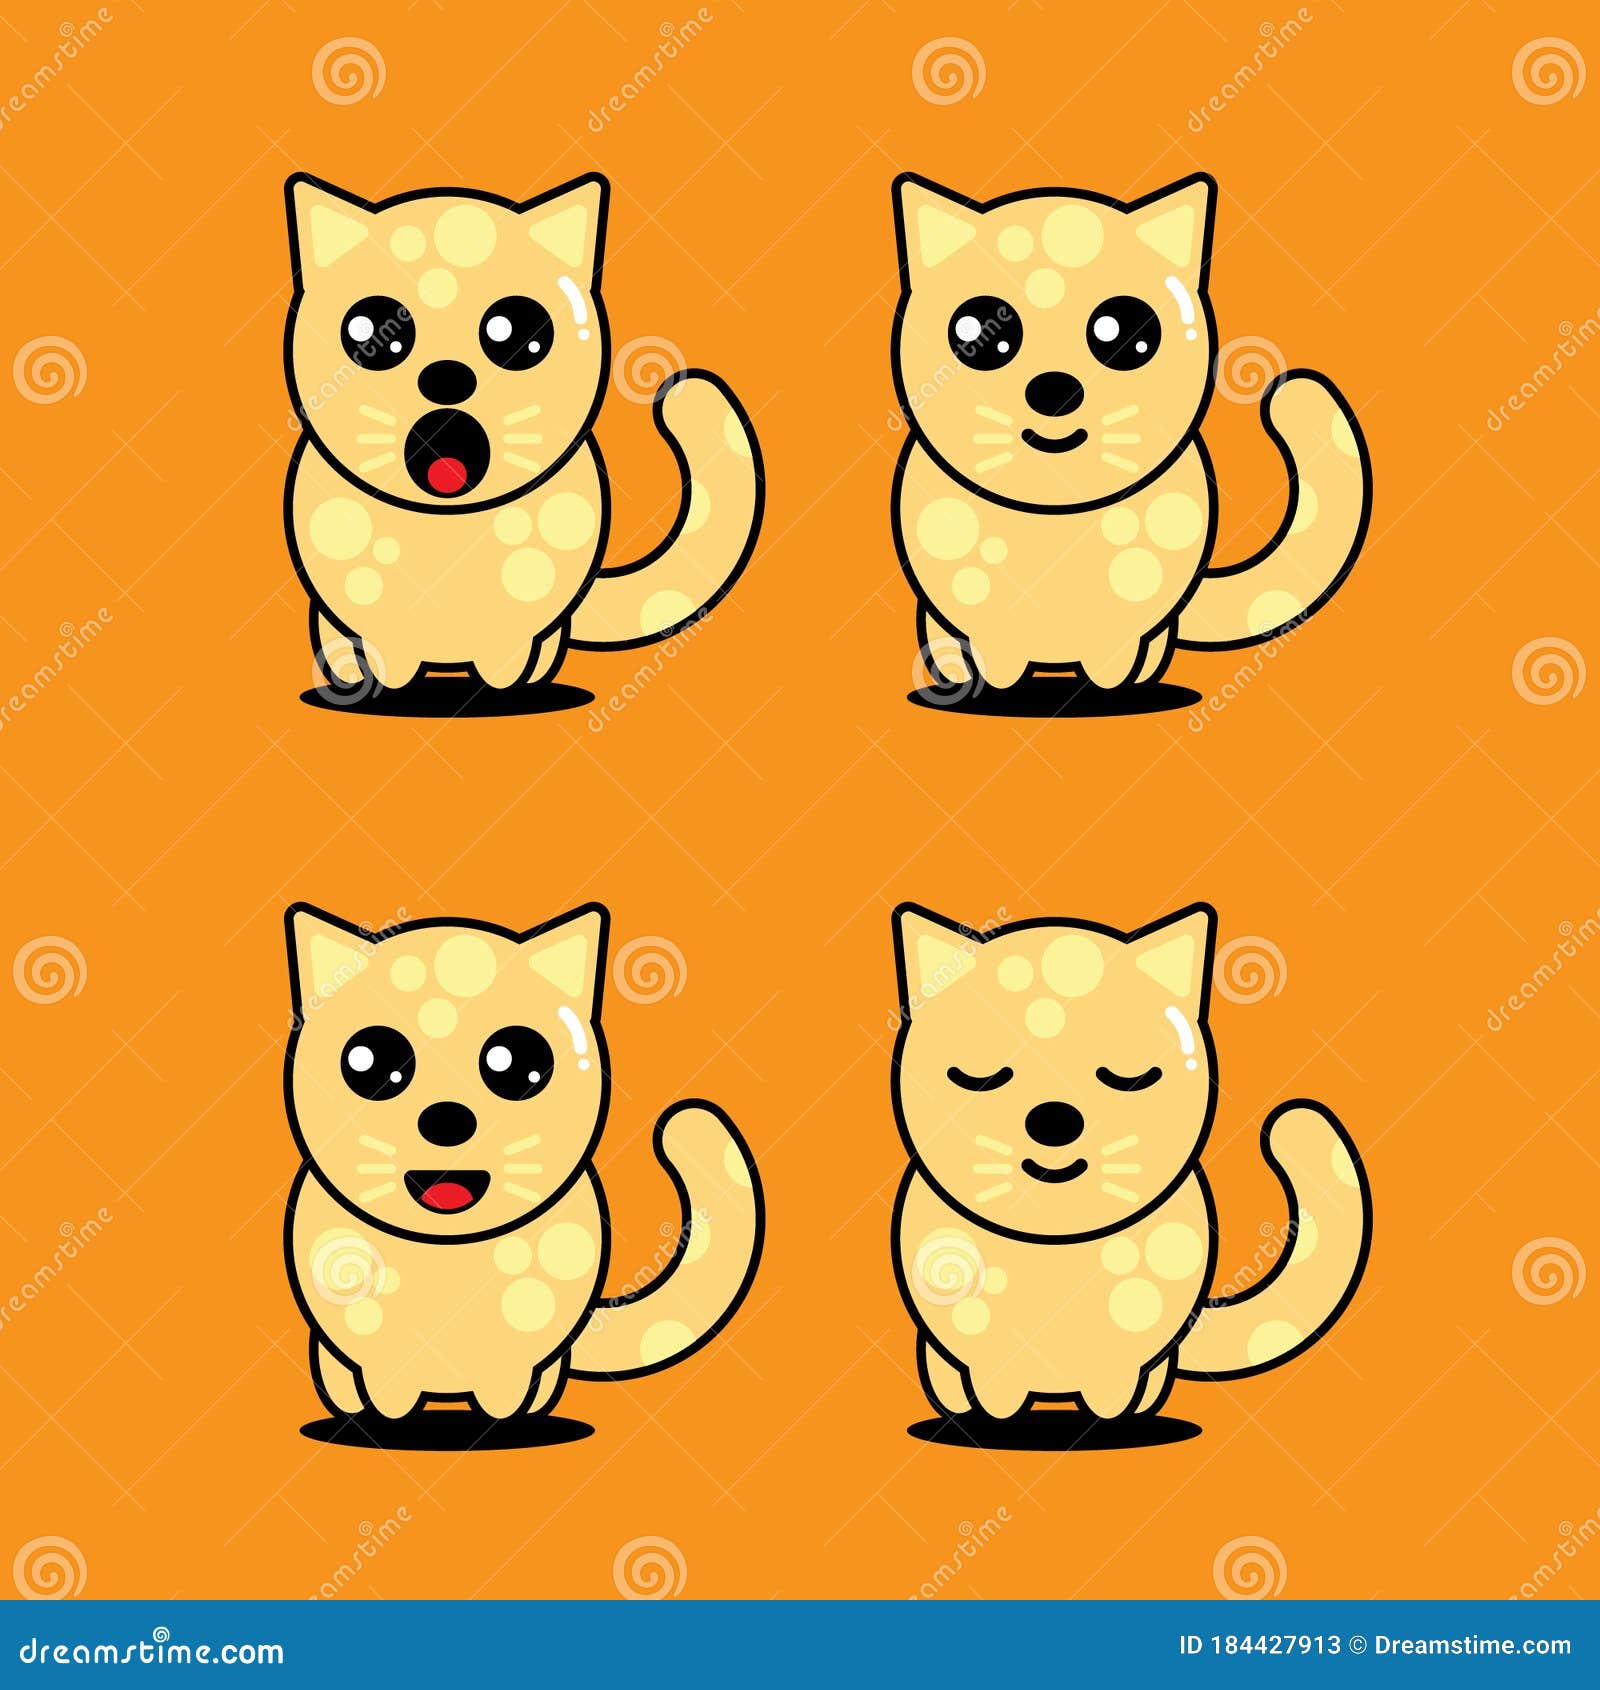 Ilustração vetorial de personagens de desenho animado de gato fofo